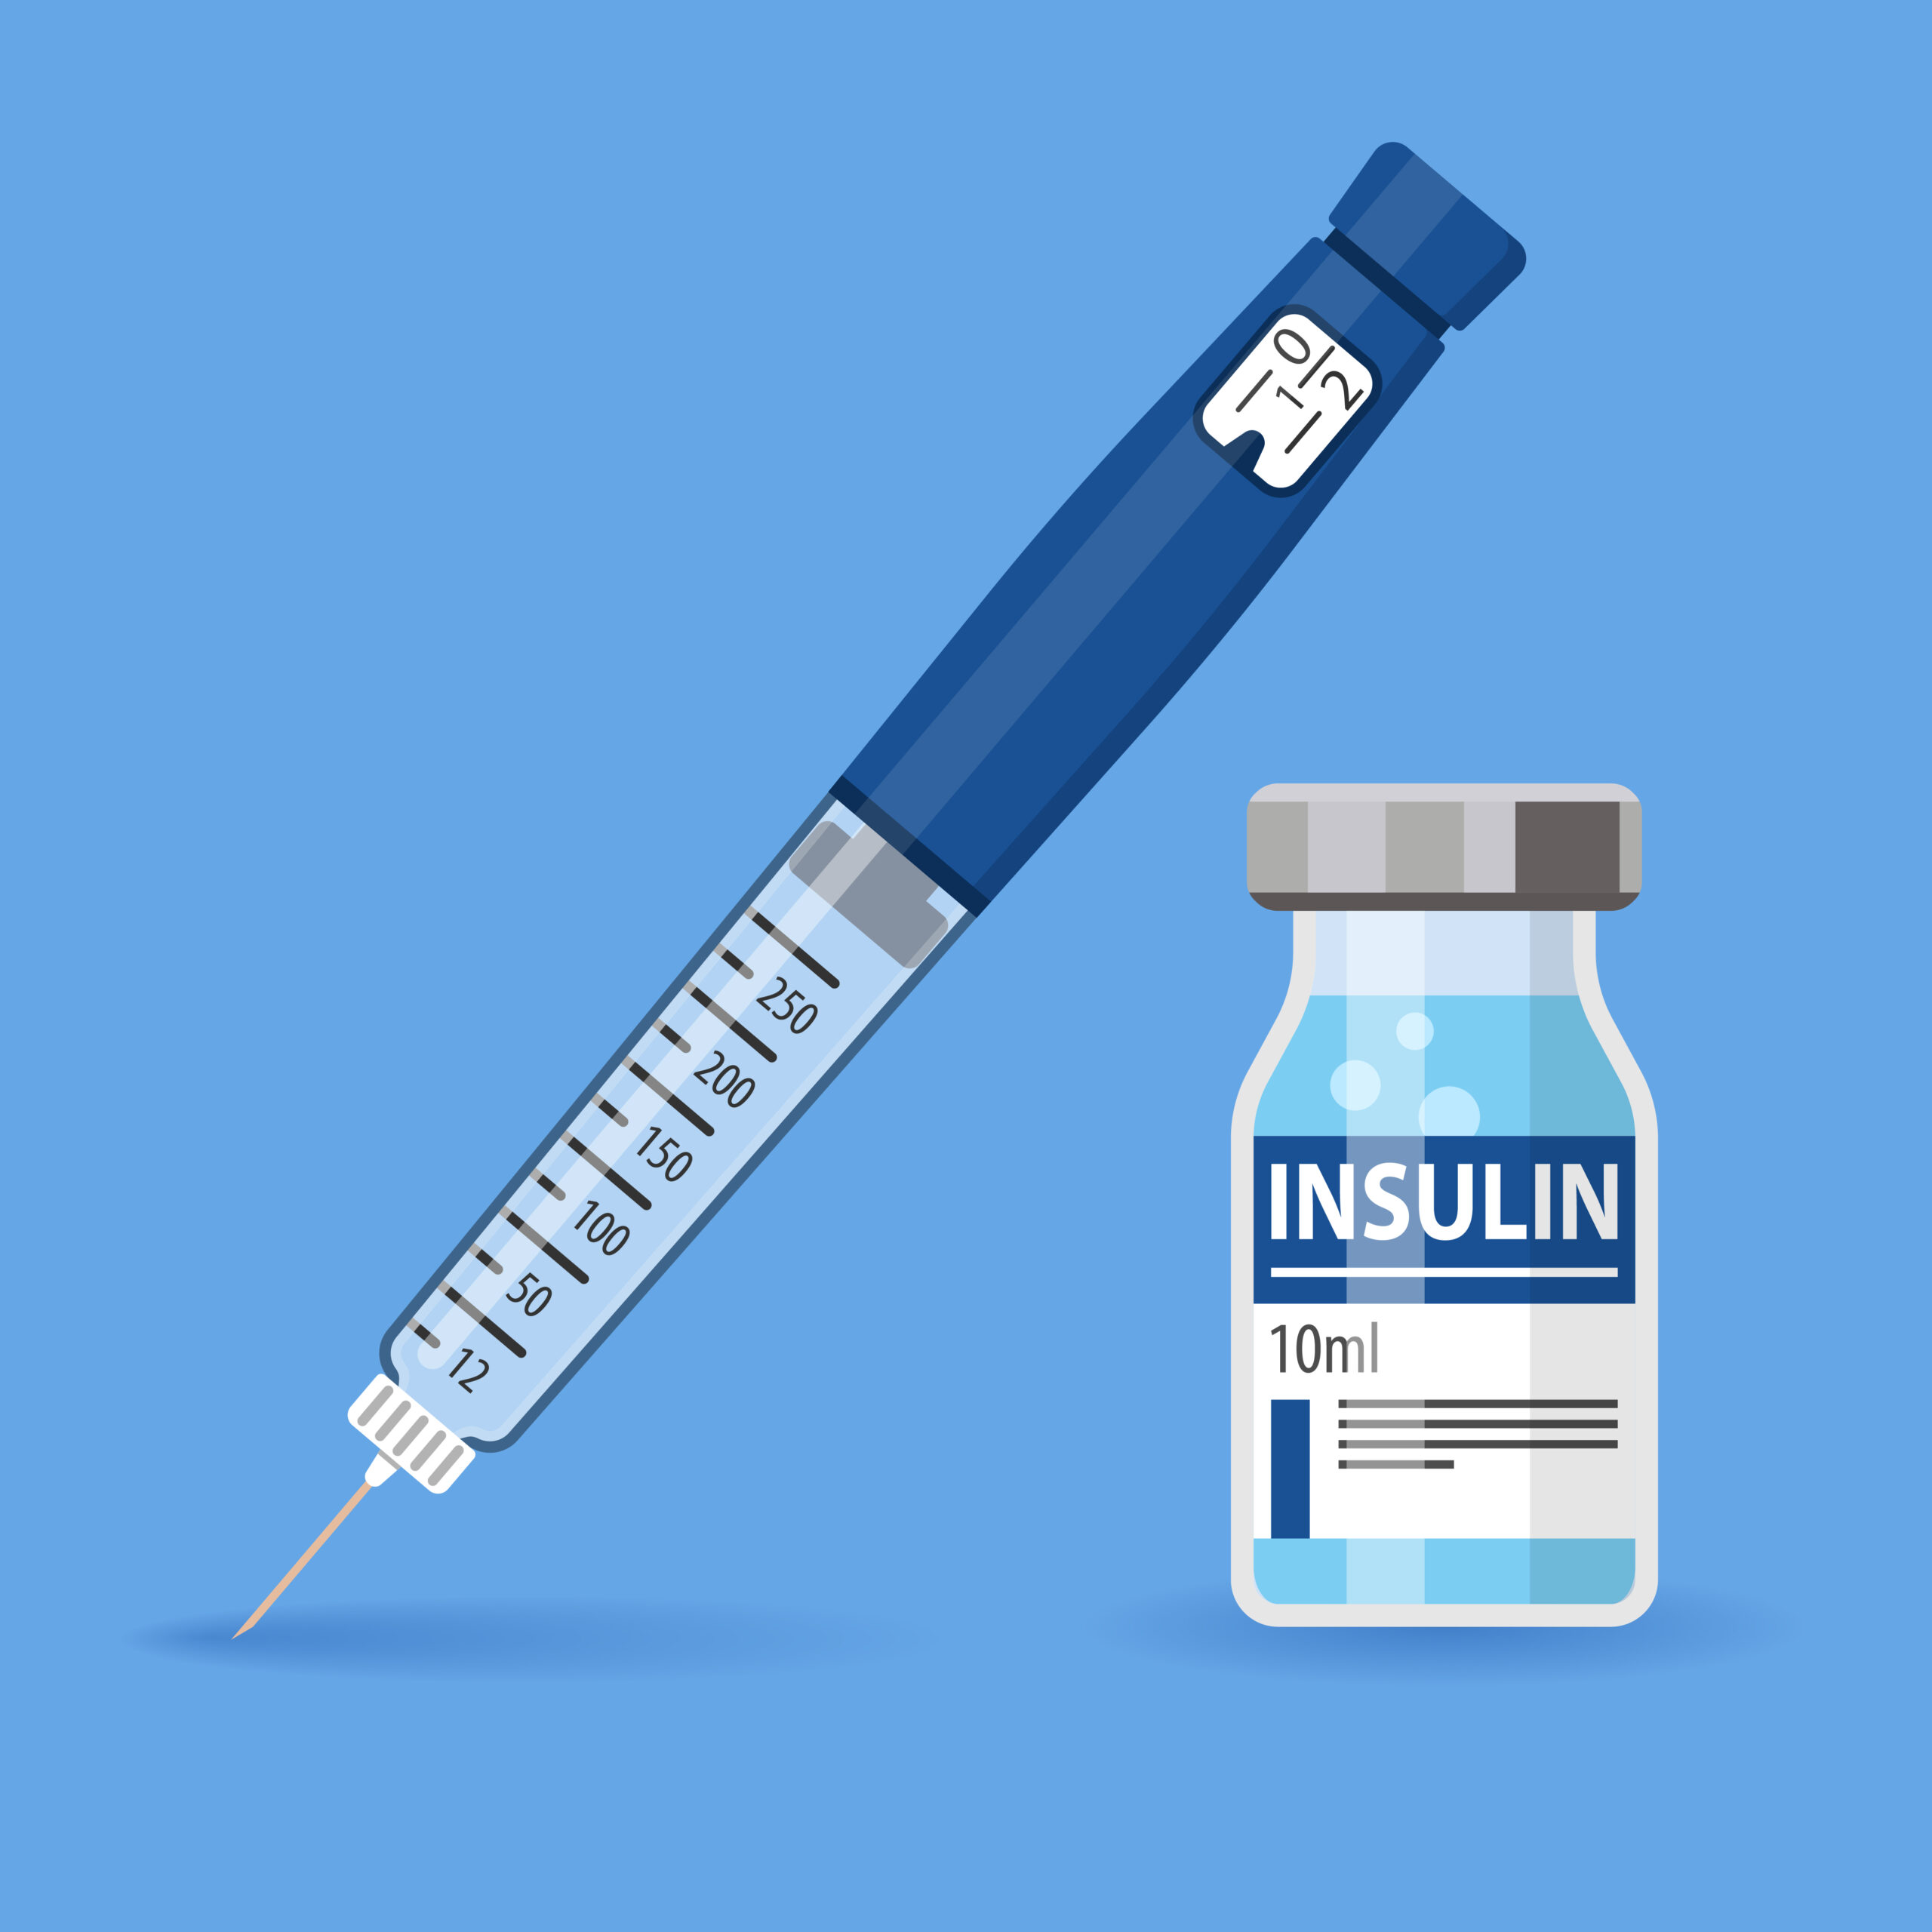 Insulinoterapia para la diabetes: cómo utilizar la insulina correctamente y controlar los niveles de glucosa en sangre